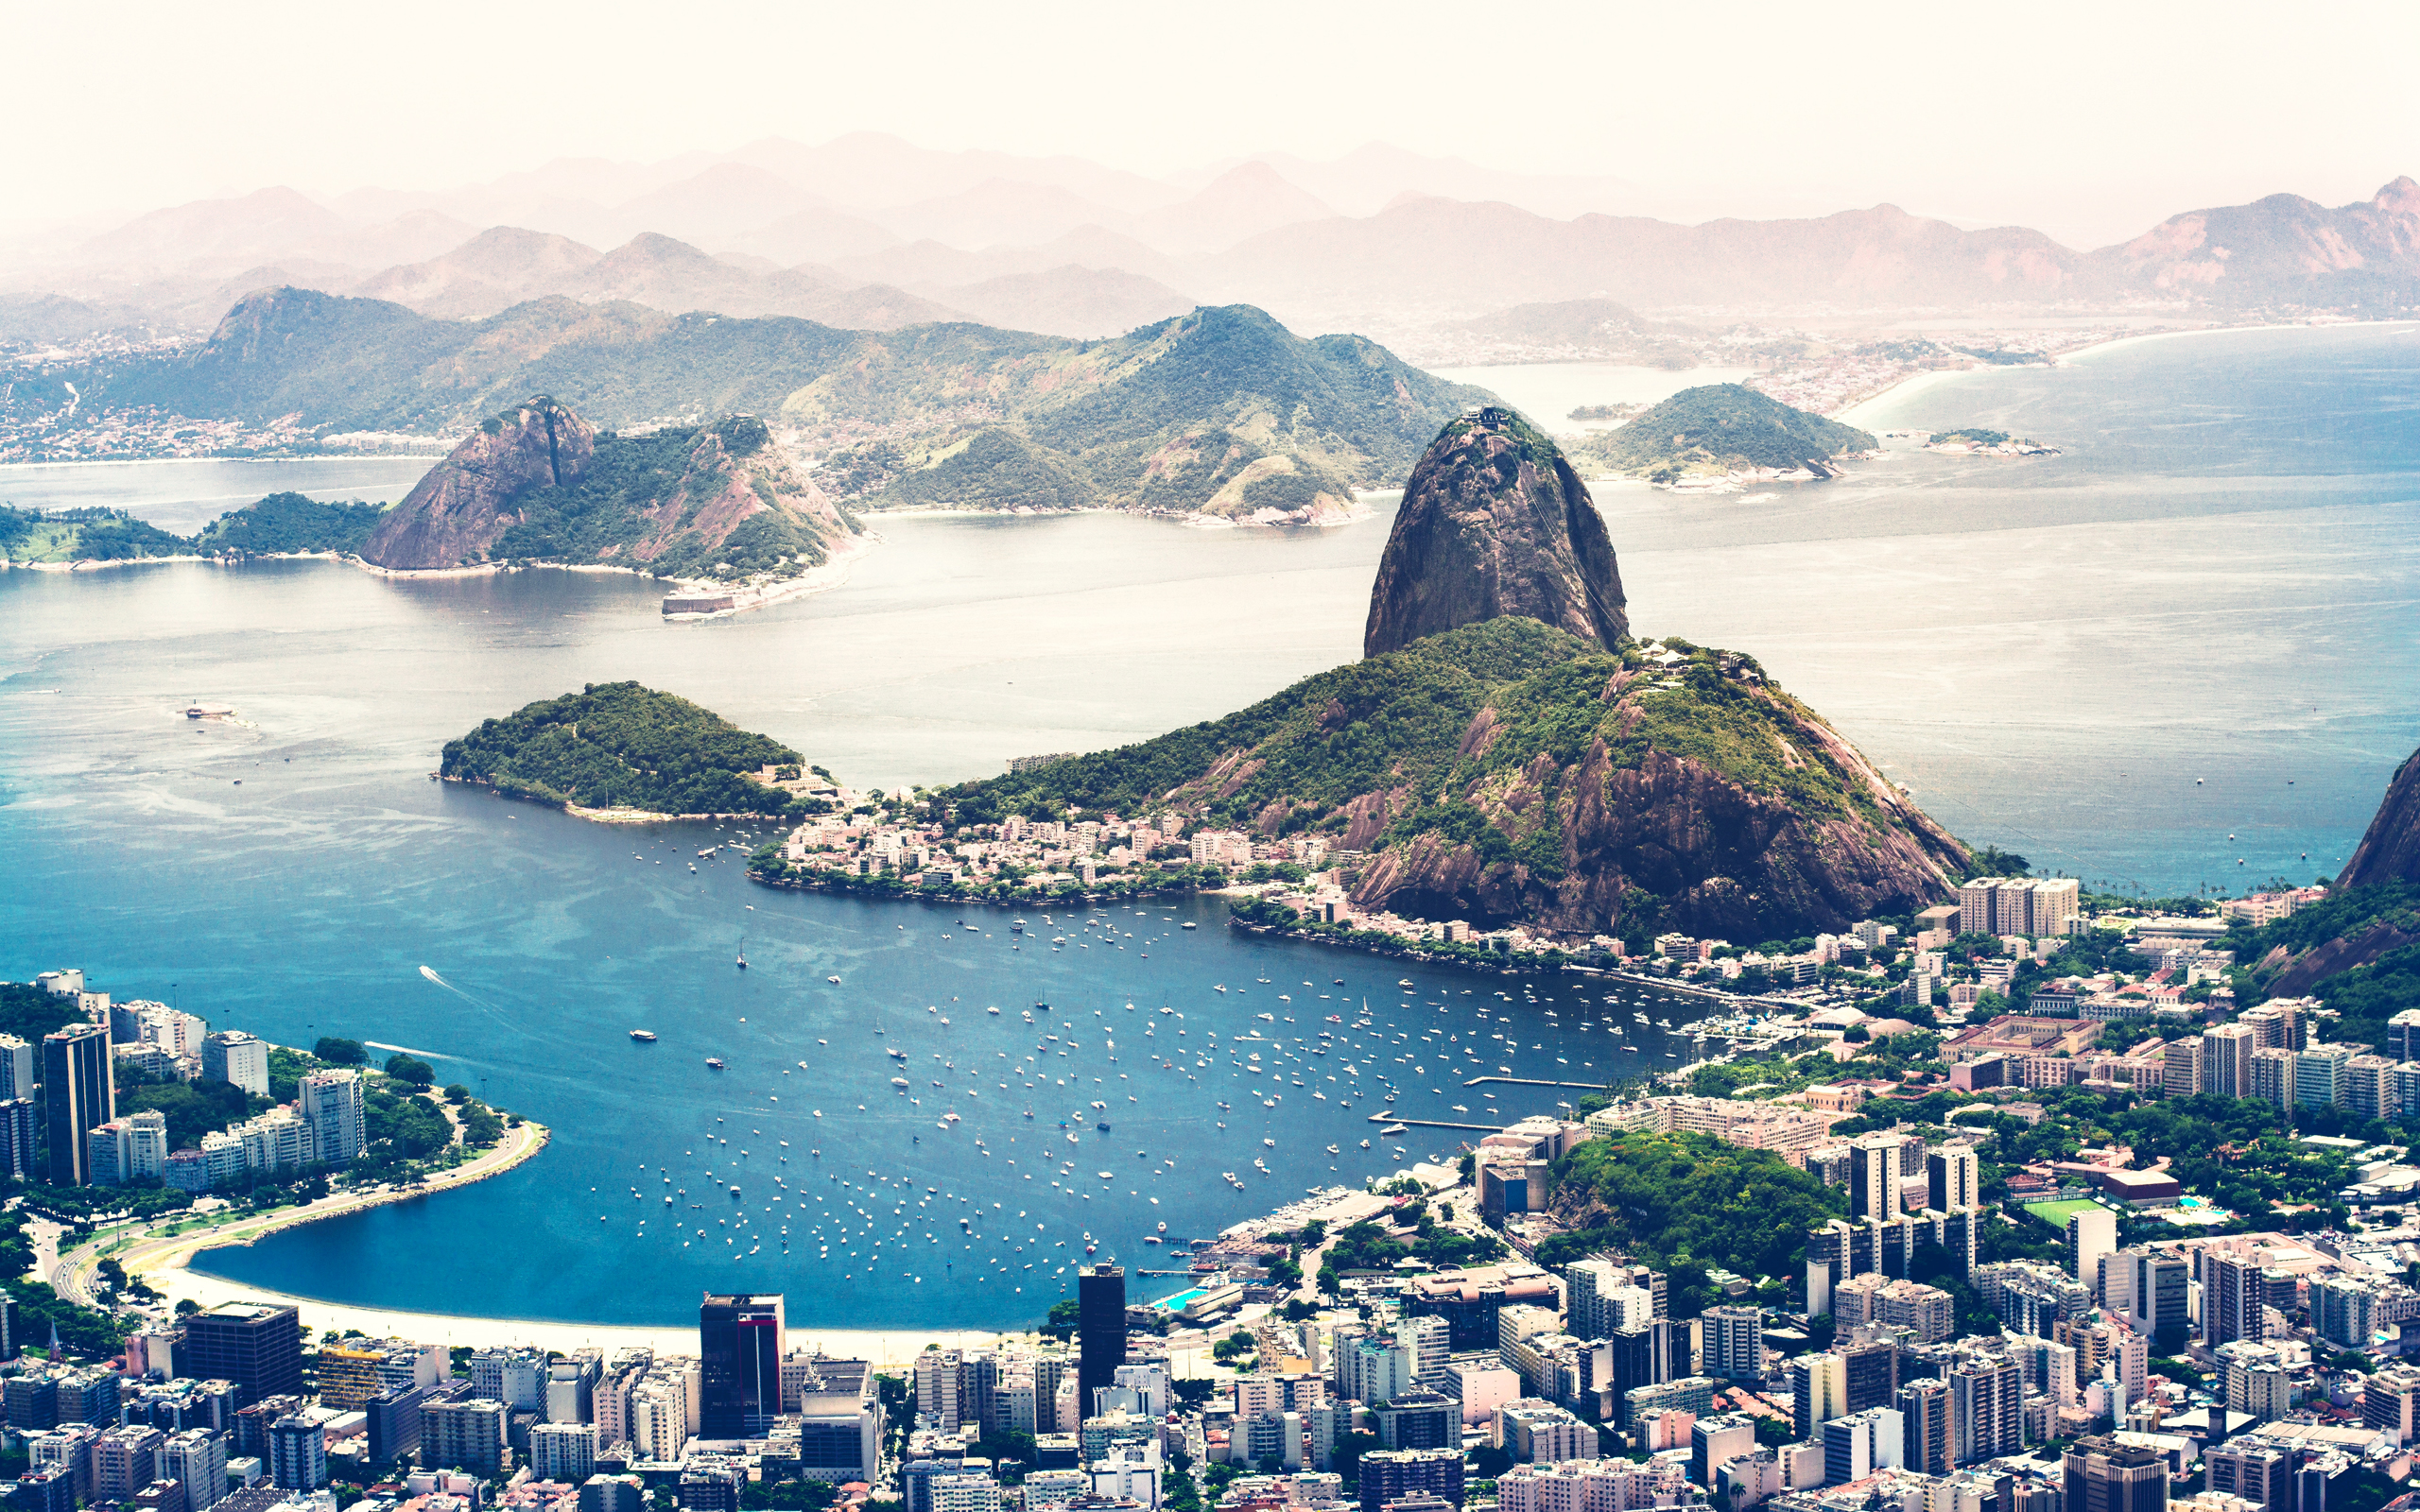 General 2560x1600 cityscape landscape Rio de Janeiro Brazil